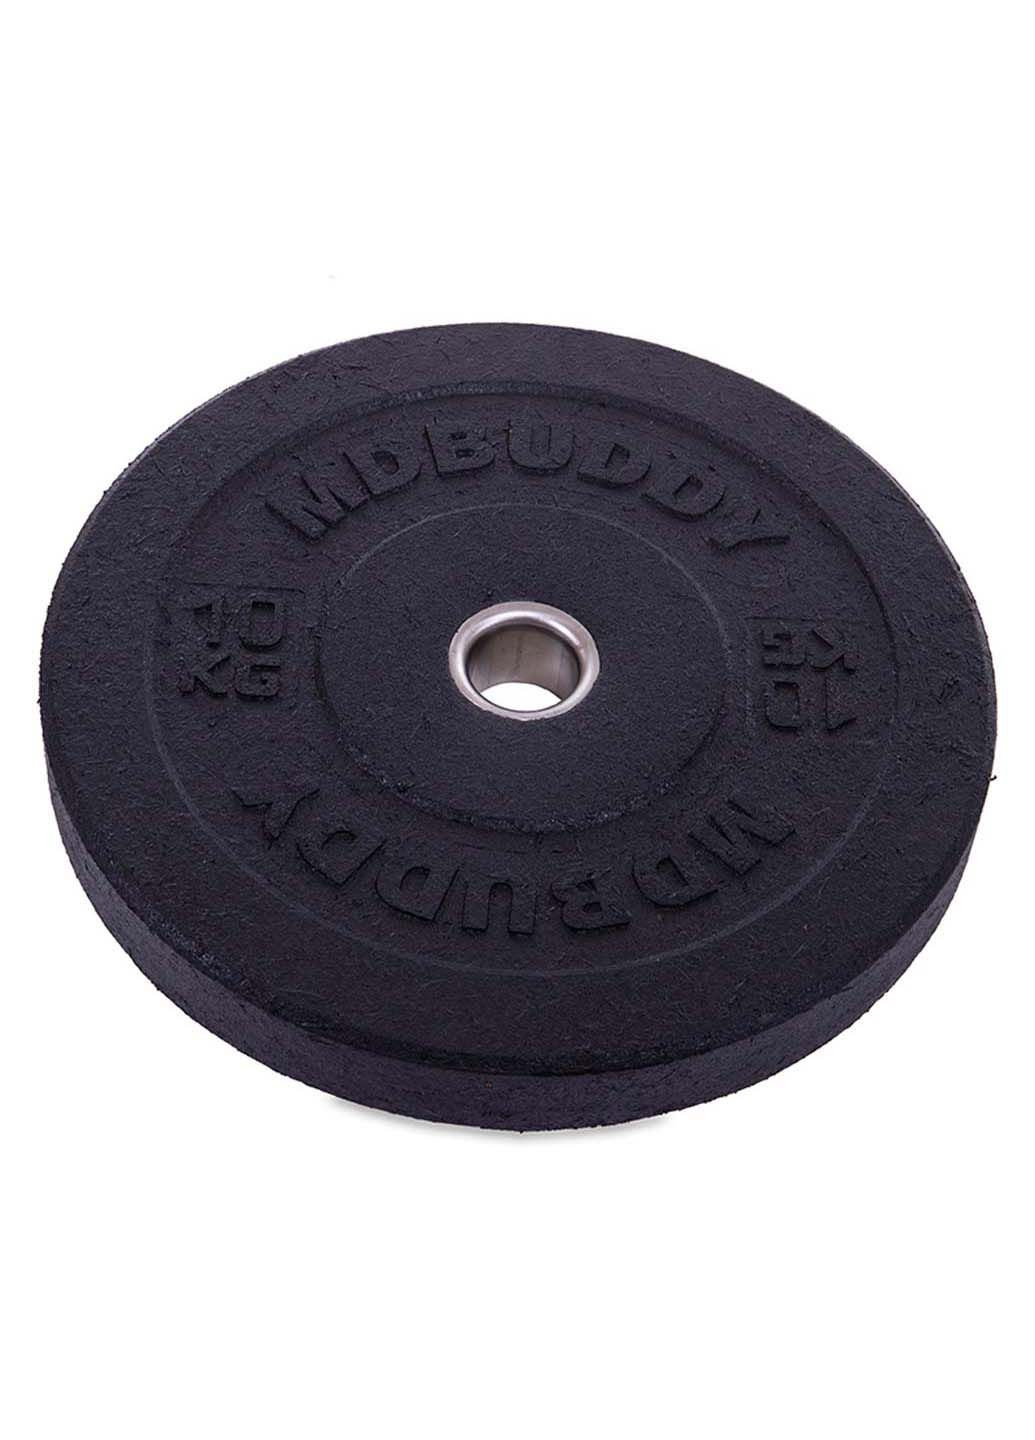 Блины диски бамперные для кроссфита Bumper Plates TA-2676 10 кг MDbuddy (286043760)